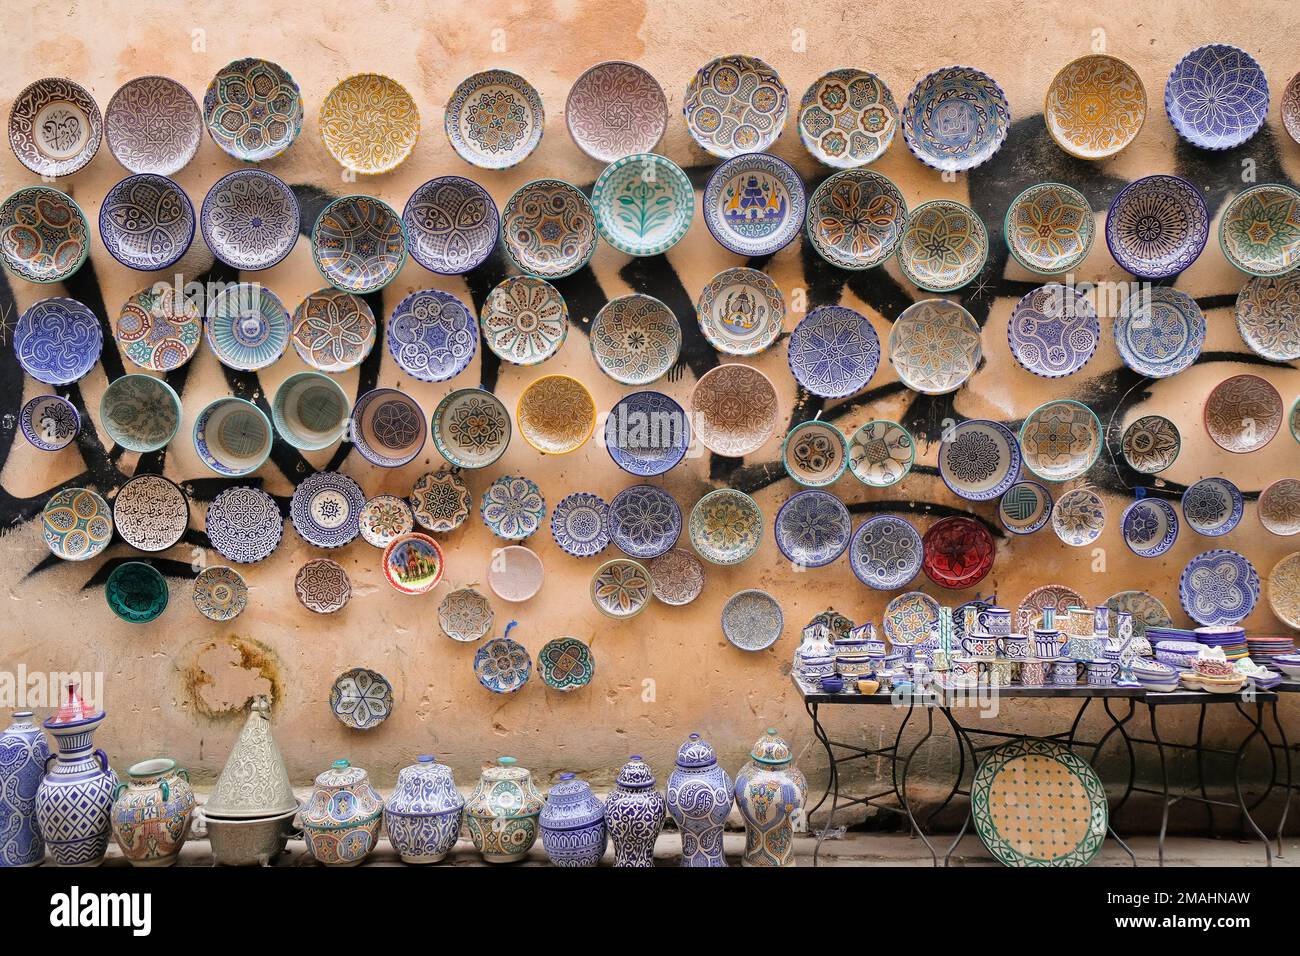 Fez, Maroc - produits céramiques en vente sur le marché de Fès el Bali. Tasses et soucoupes sur table, bocaux sur le sol, plaques sur le mur vandalisé. Arrière-plan de voyage. Banque D'Images